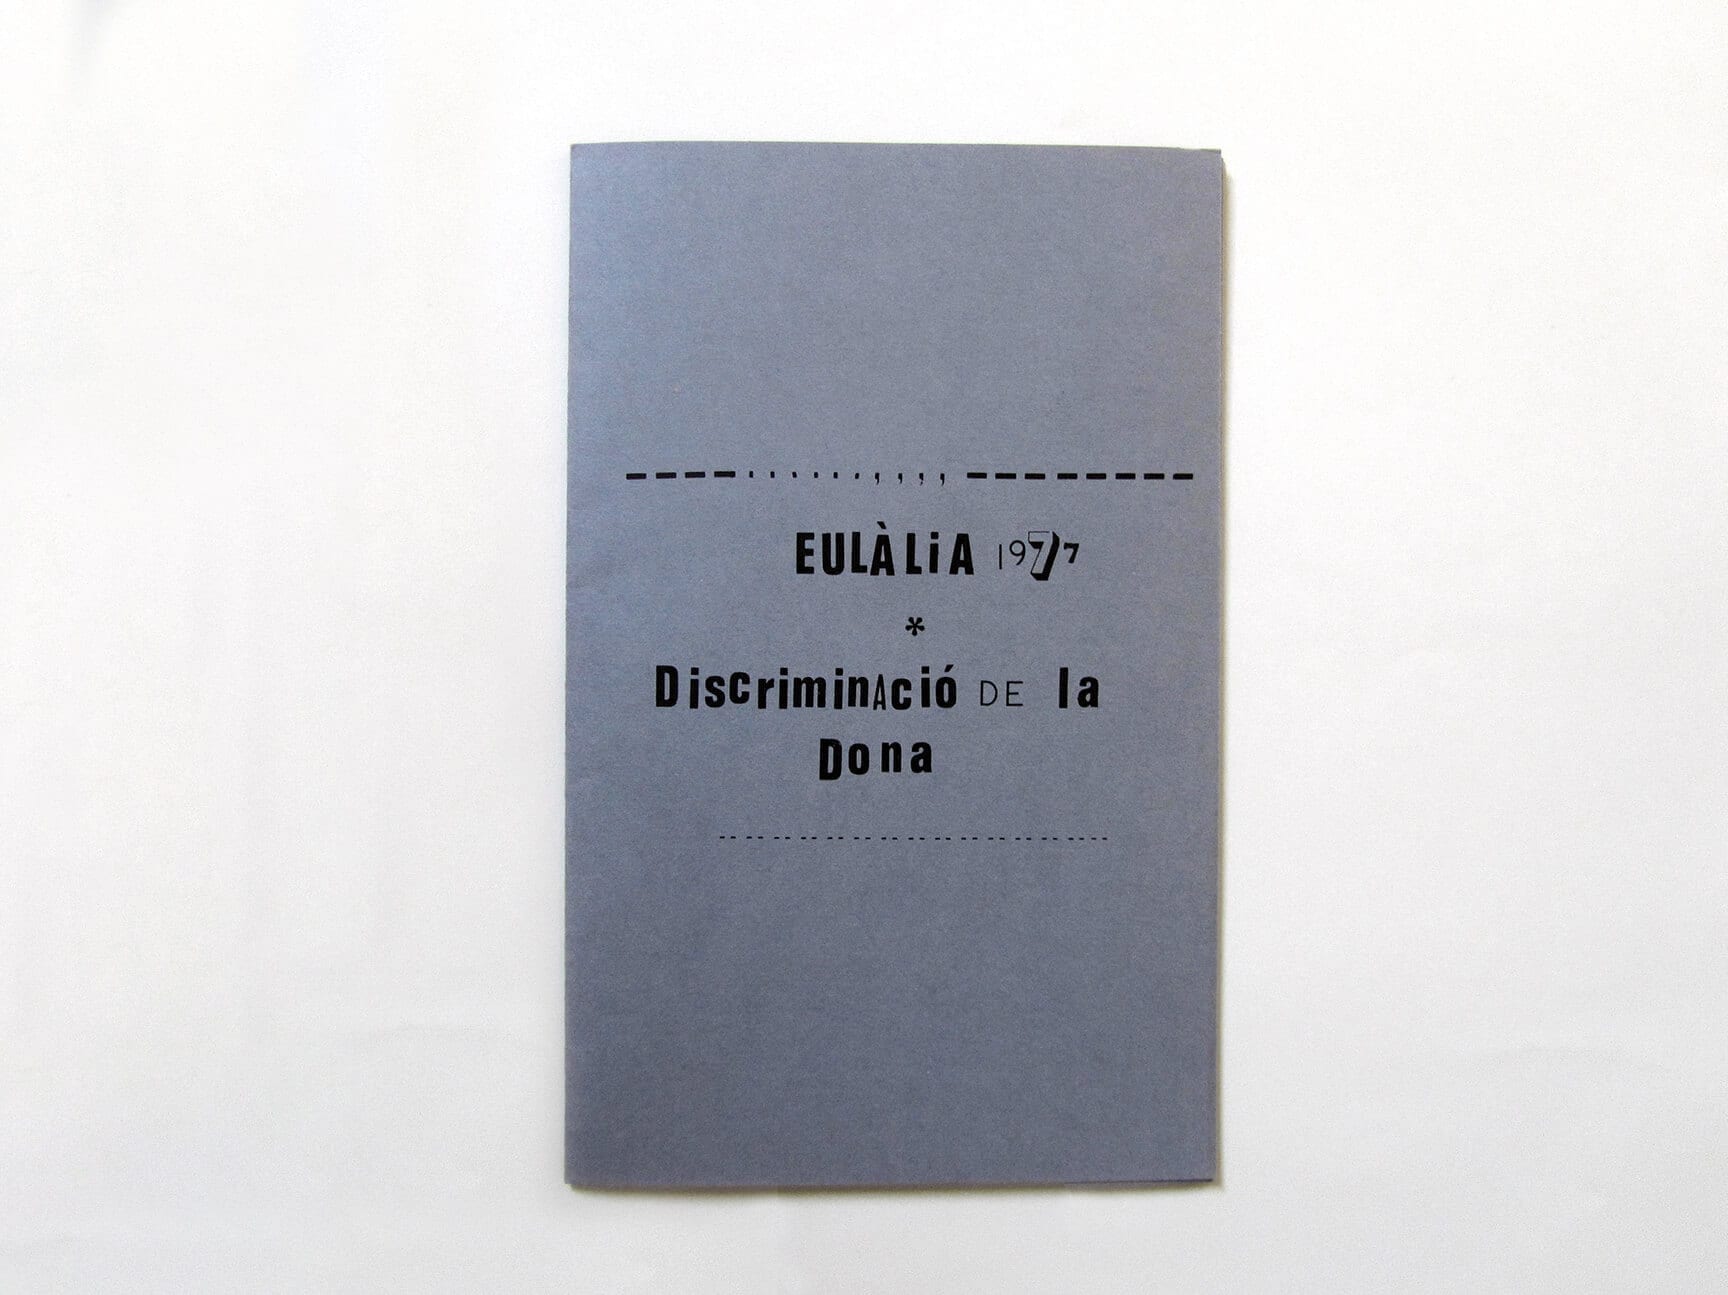 Eulàlia Grau, Discriminació de la dona (Discriminación de la mujer), 1977